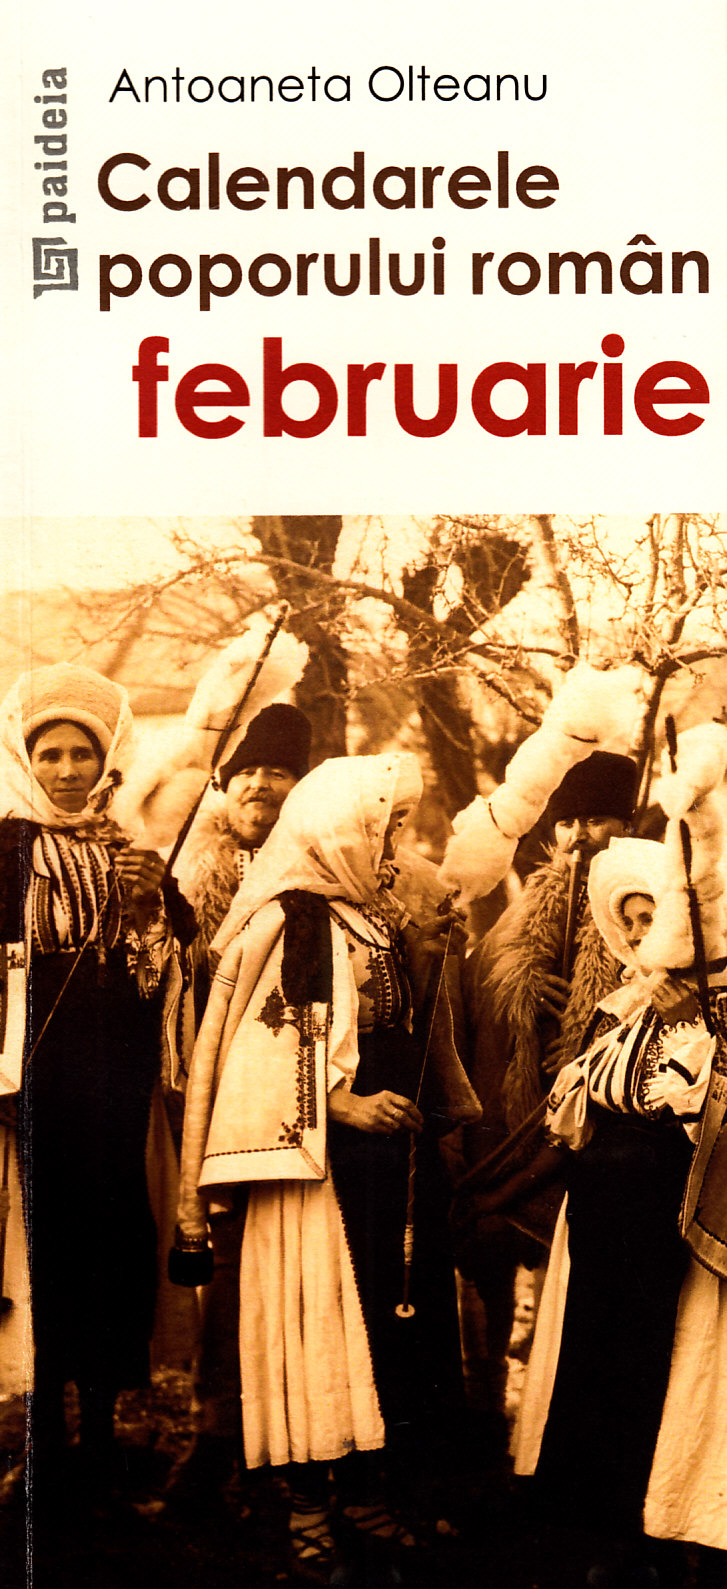 Calendarele poporului roman - Februarie - Antoaneta Olteanu